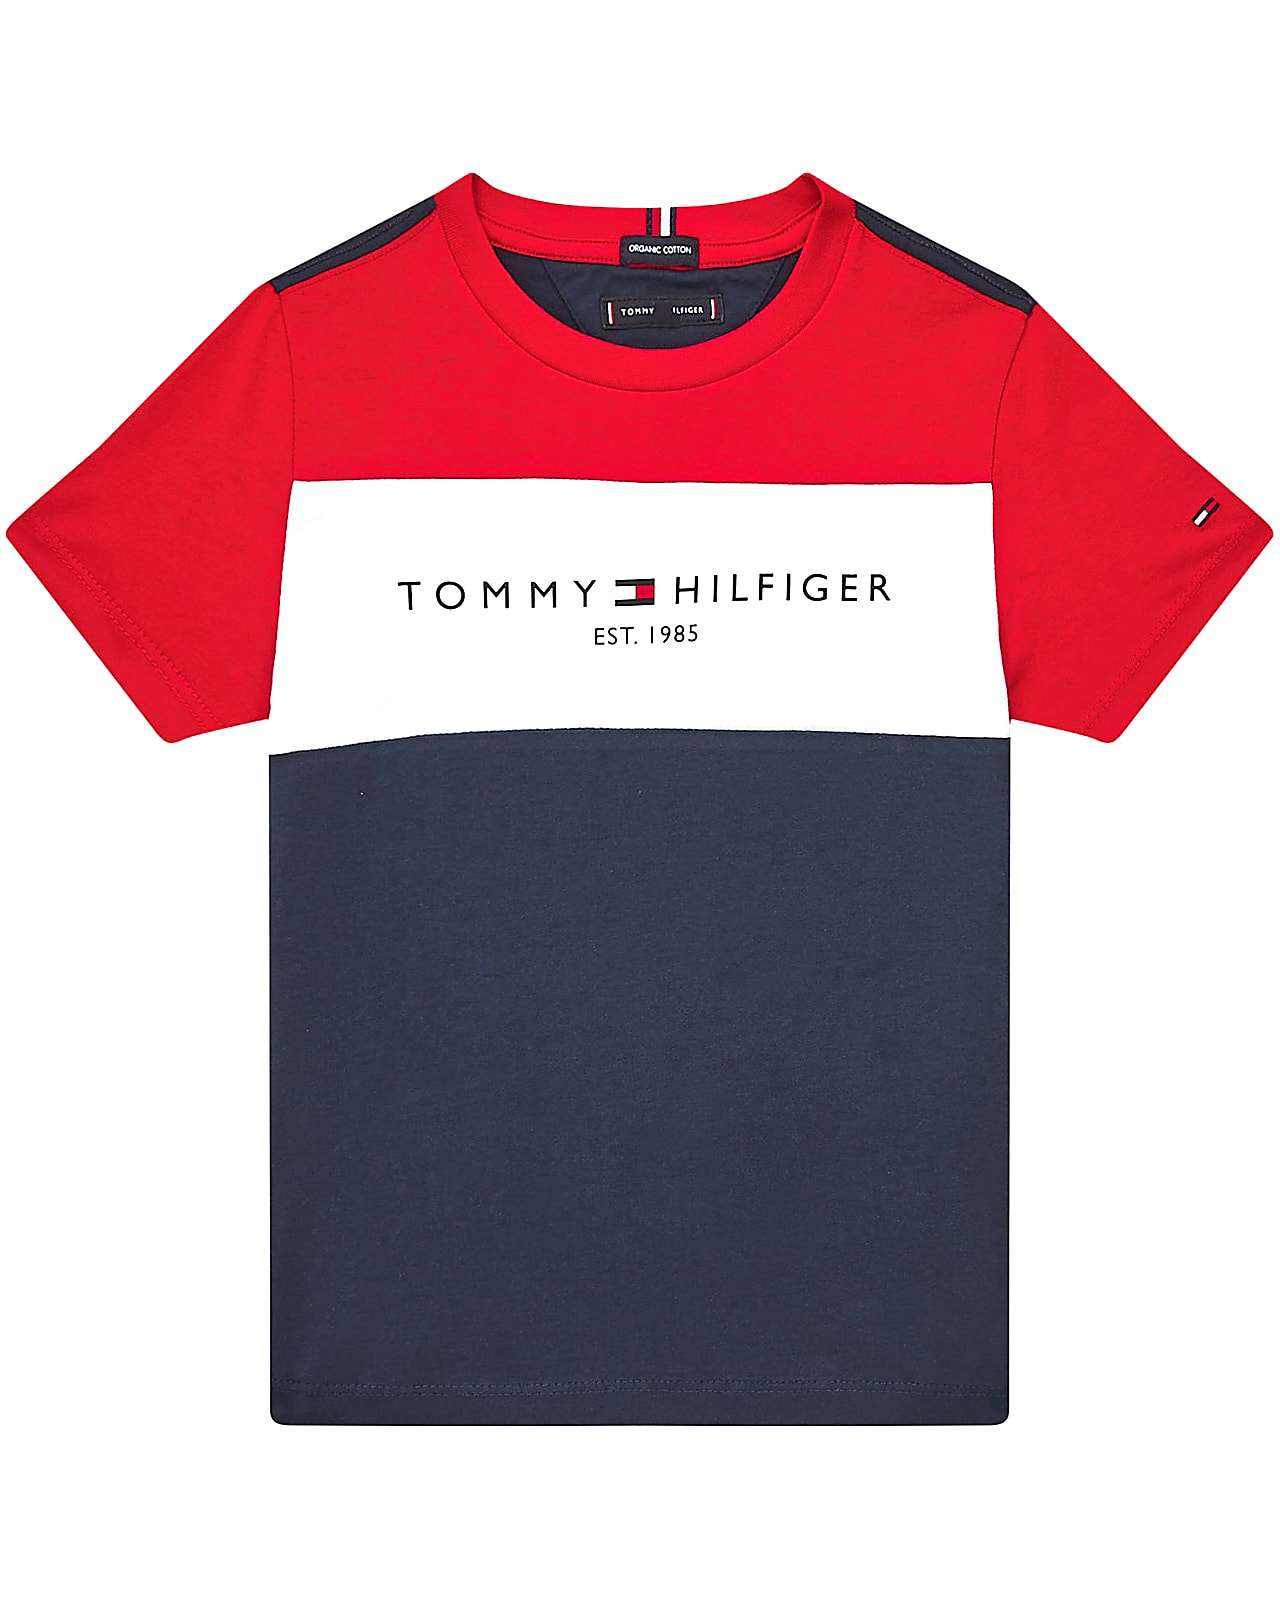 Problem Derfor slutningen Tommy Hilfiger t-shirt s/s, Essential, twilightnavy. Alle slags overdele  til børn, teens og voksne her